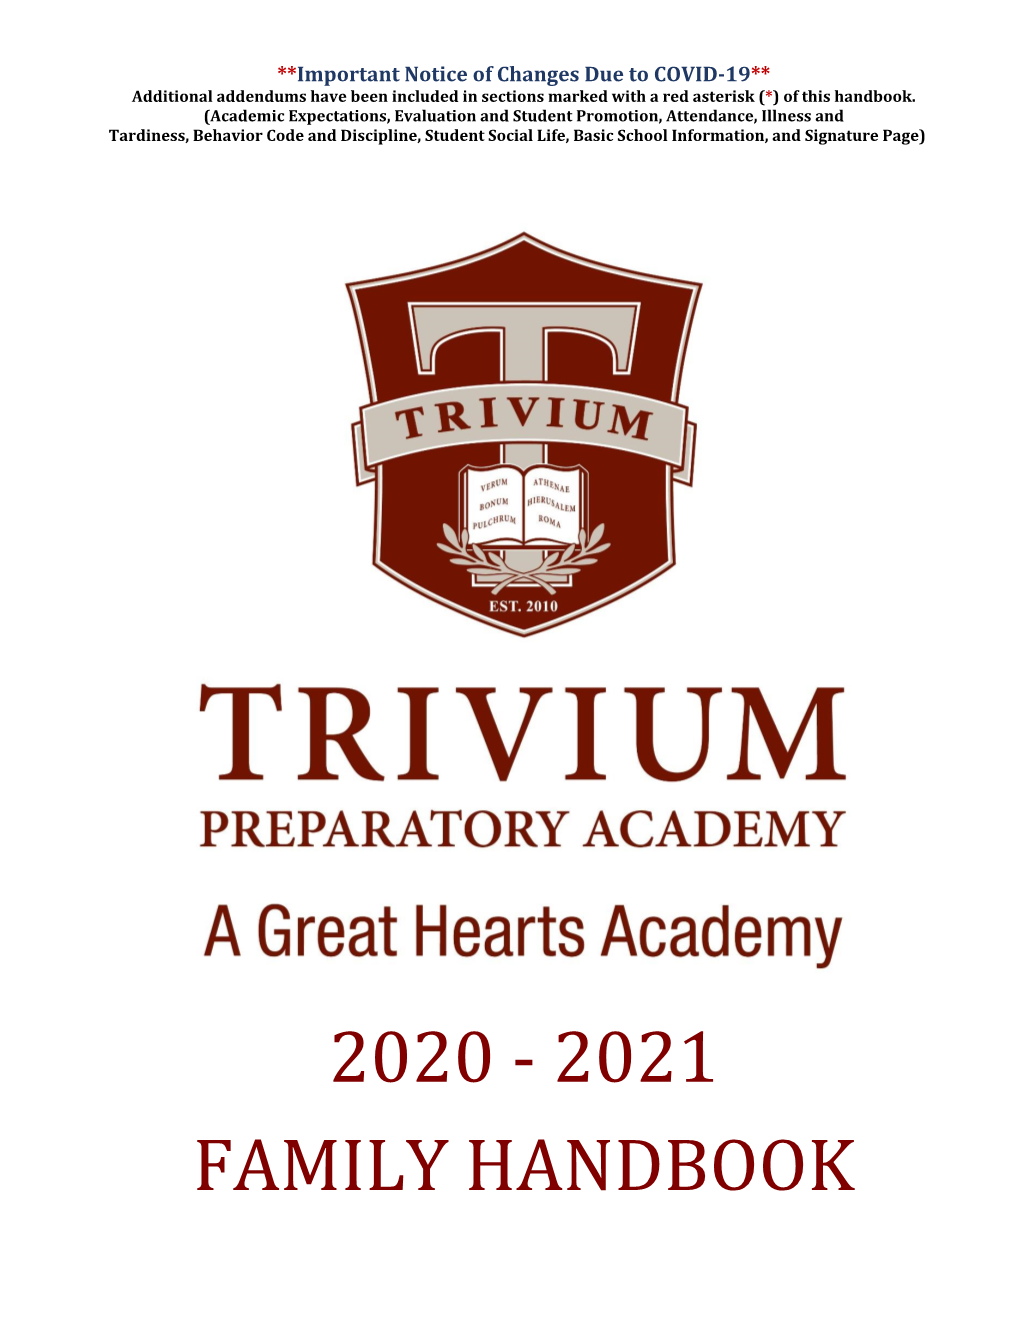 2020-2021 Family Handbook for Trivium Prep